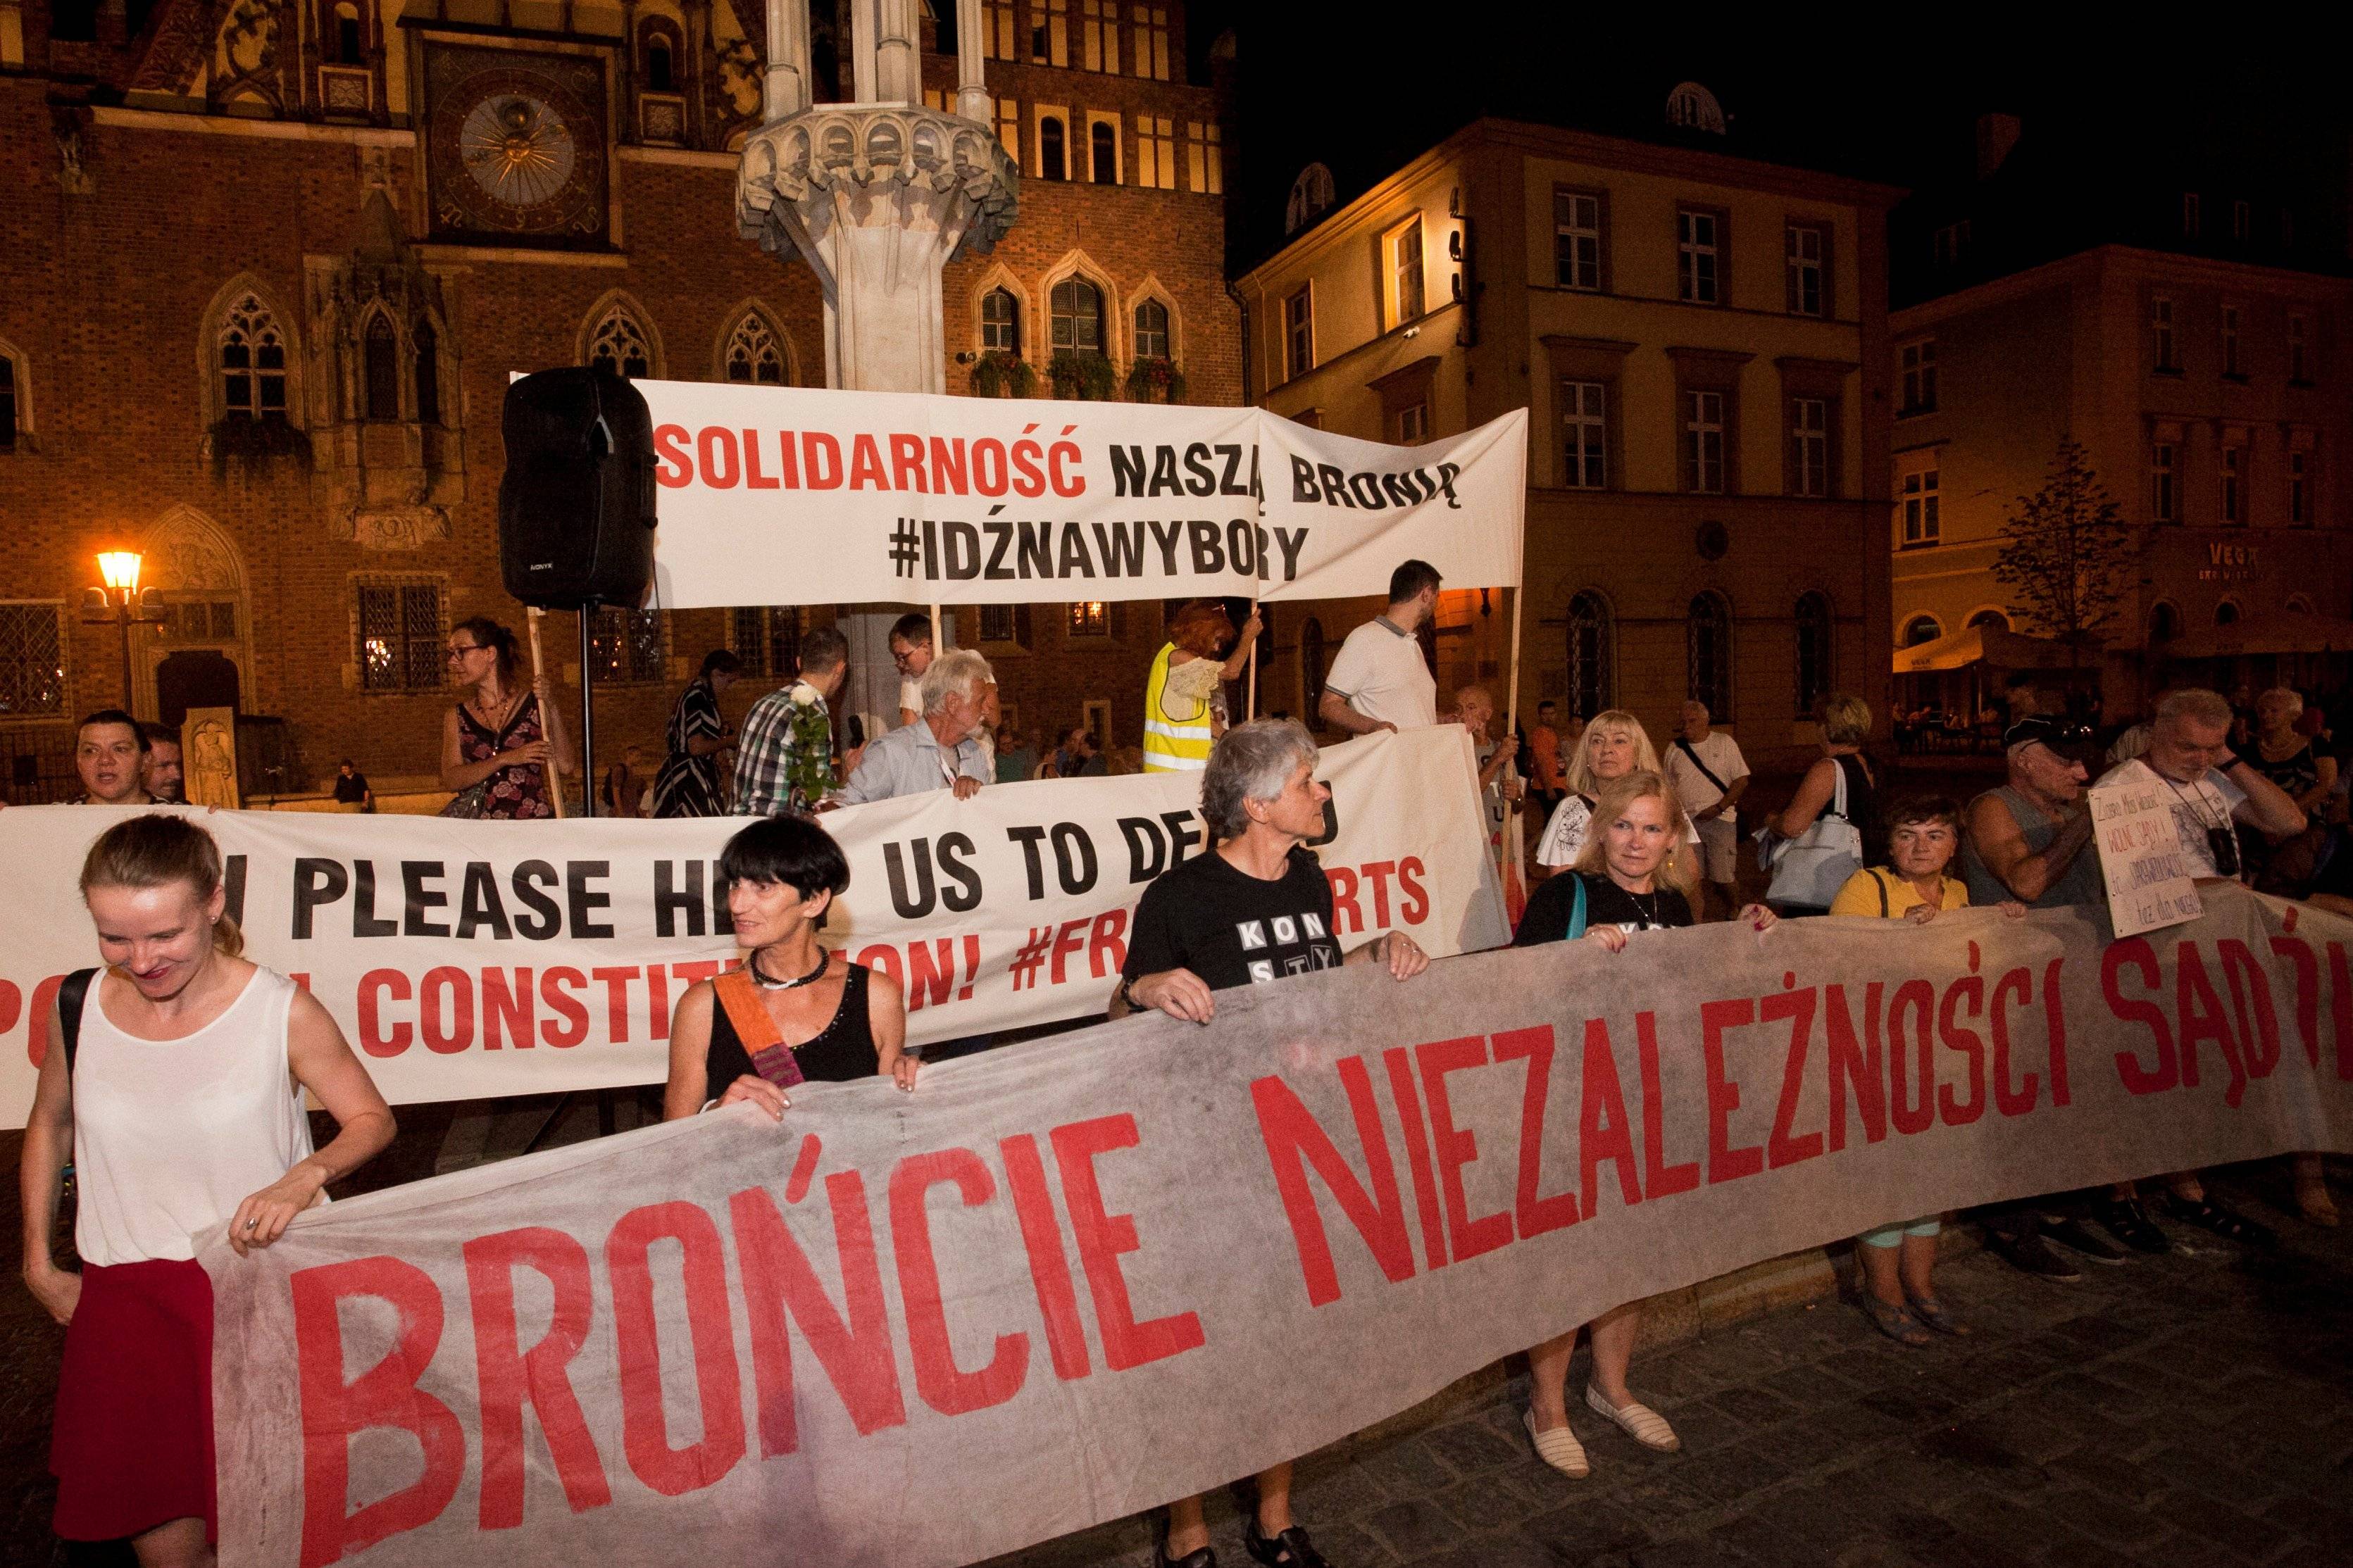 na zdjęciu widać osoby stojące na rynku we Wrocławiu z banerami z napisem "brońcie niezależności sądów"